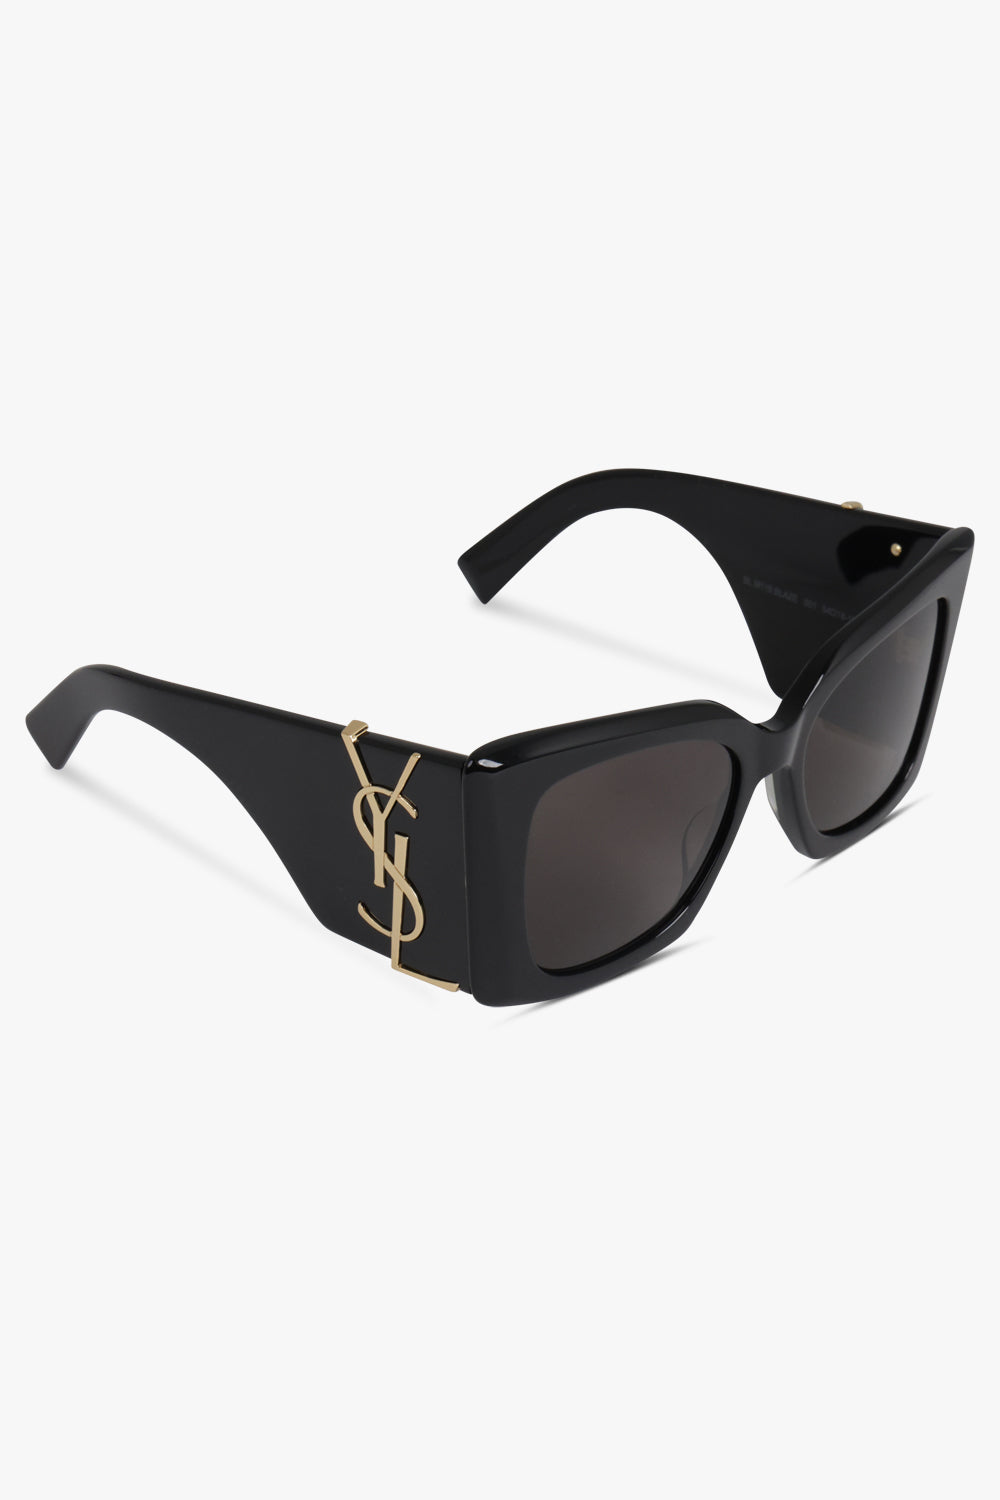 SAINT LAURENT ACCESSORIES BLACK / BLACK/GOLD Large Logo Sunglasses | Black/Gold